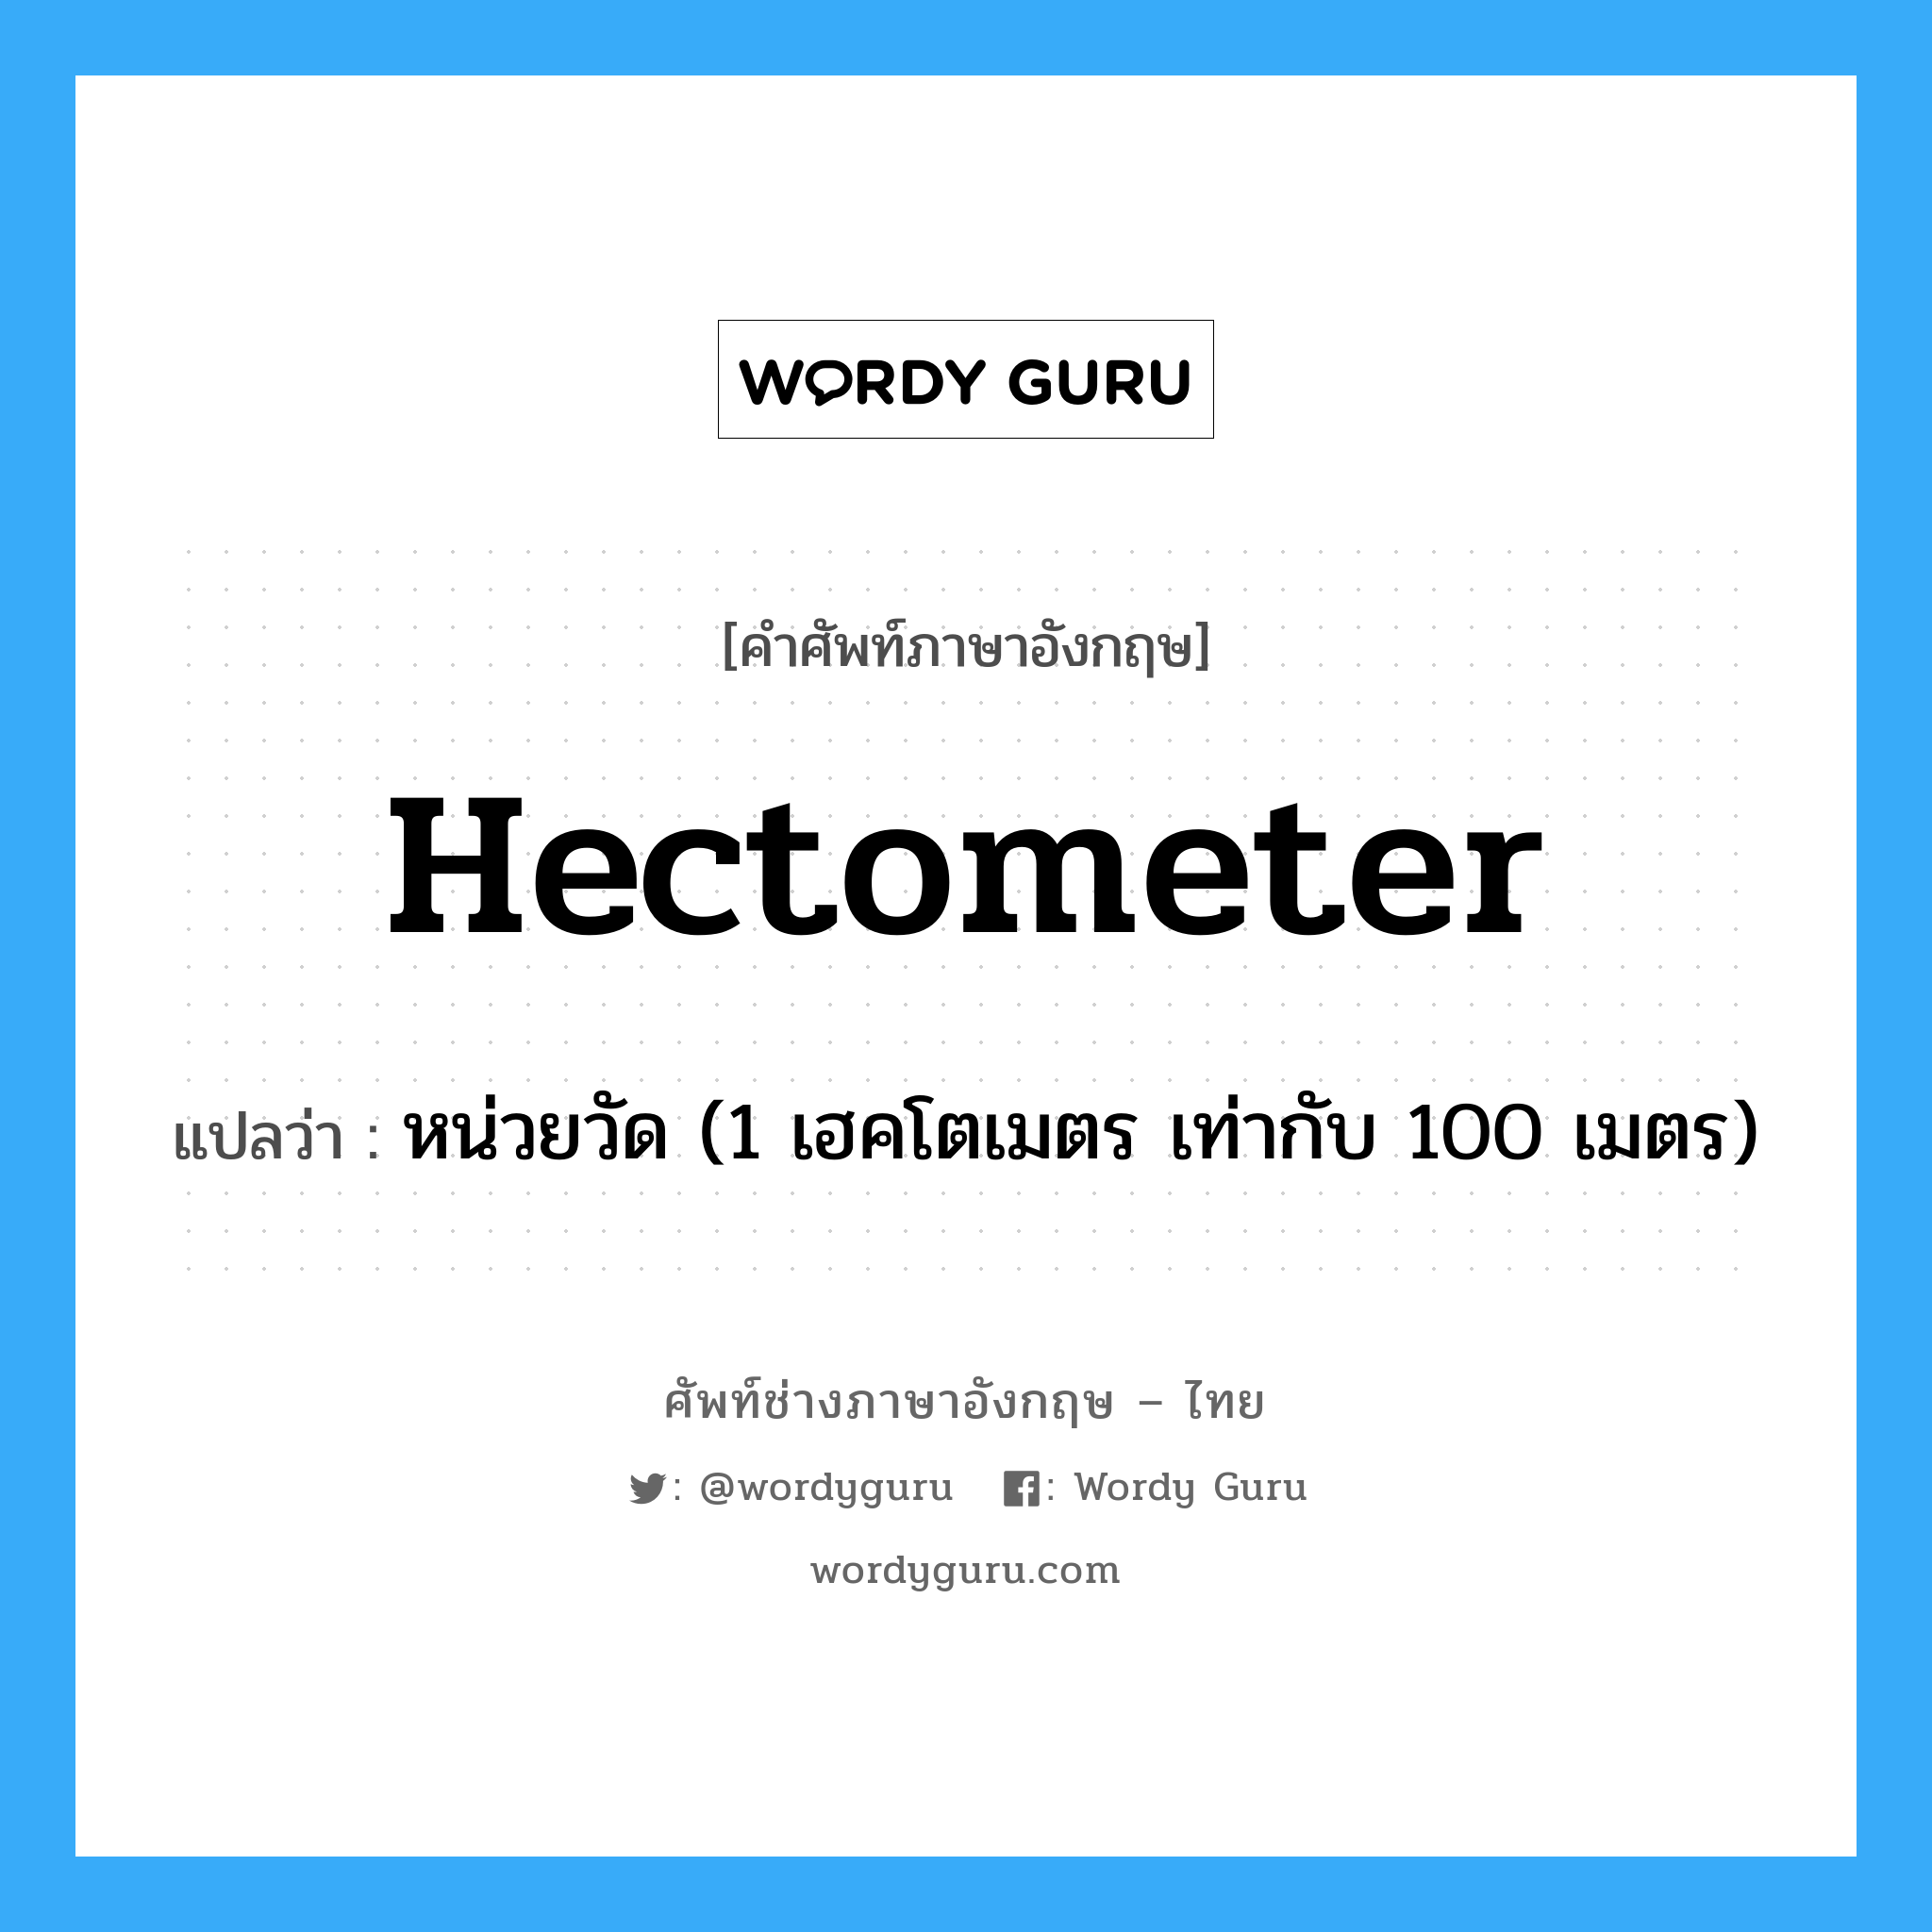 หน่วยวัด (1 เฮคโตเมตร เท่ากับ 100 เมตร) ภาษาอังกฤษ?, คำศัพท์ช่างภาษาอังกฤษ - ไทย หน่วยวัด (1 เฮคโตเมตร เท่ากับ 100 เมตร) คำศัพท์ภาษาอังกฤษ หน่วยวัด (1 เฮคโตเมตร เท่ากับ 100 เมตร) แปลว่า hectometer